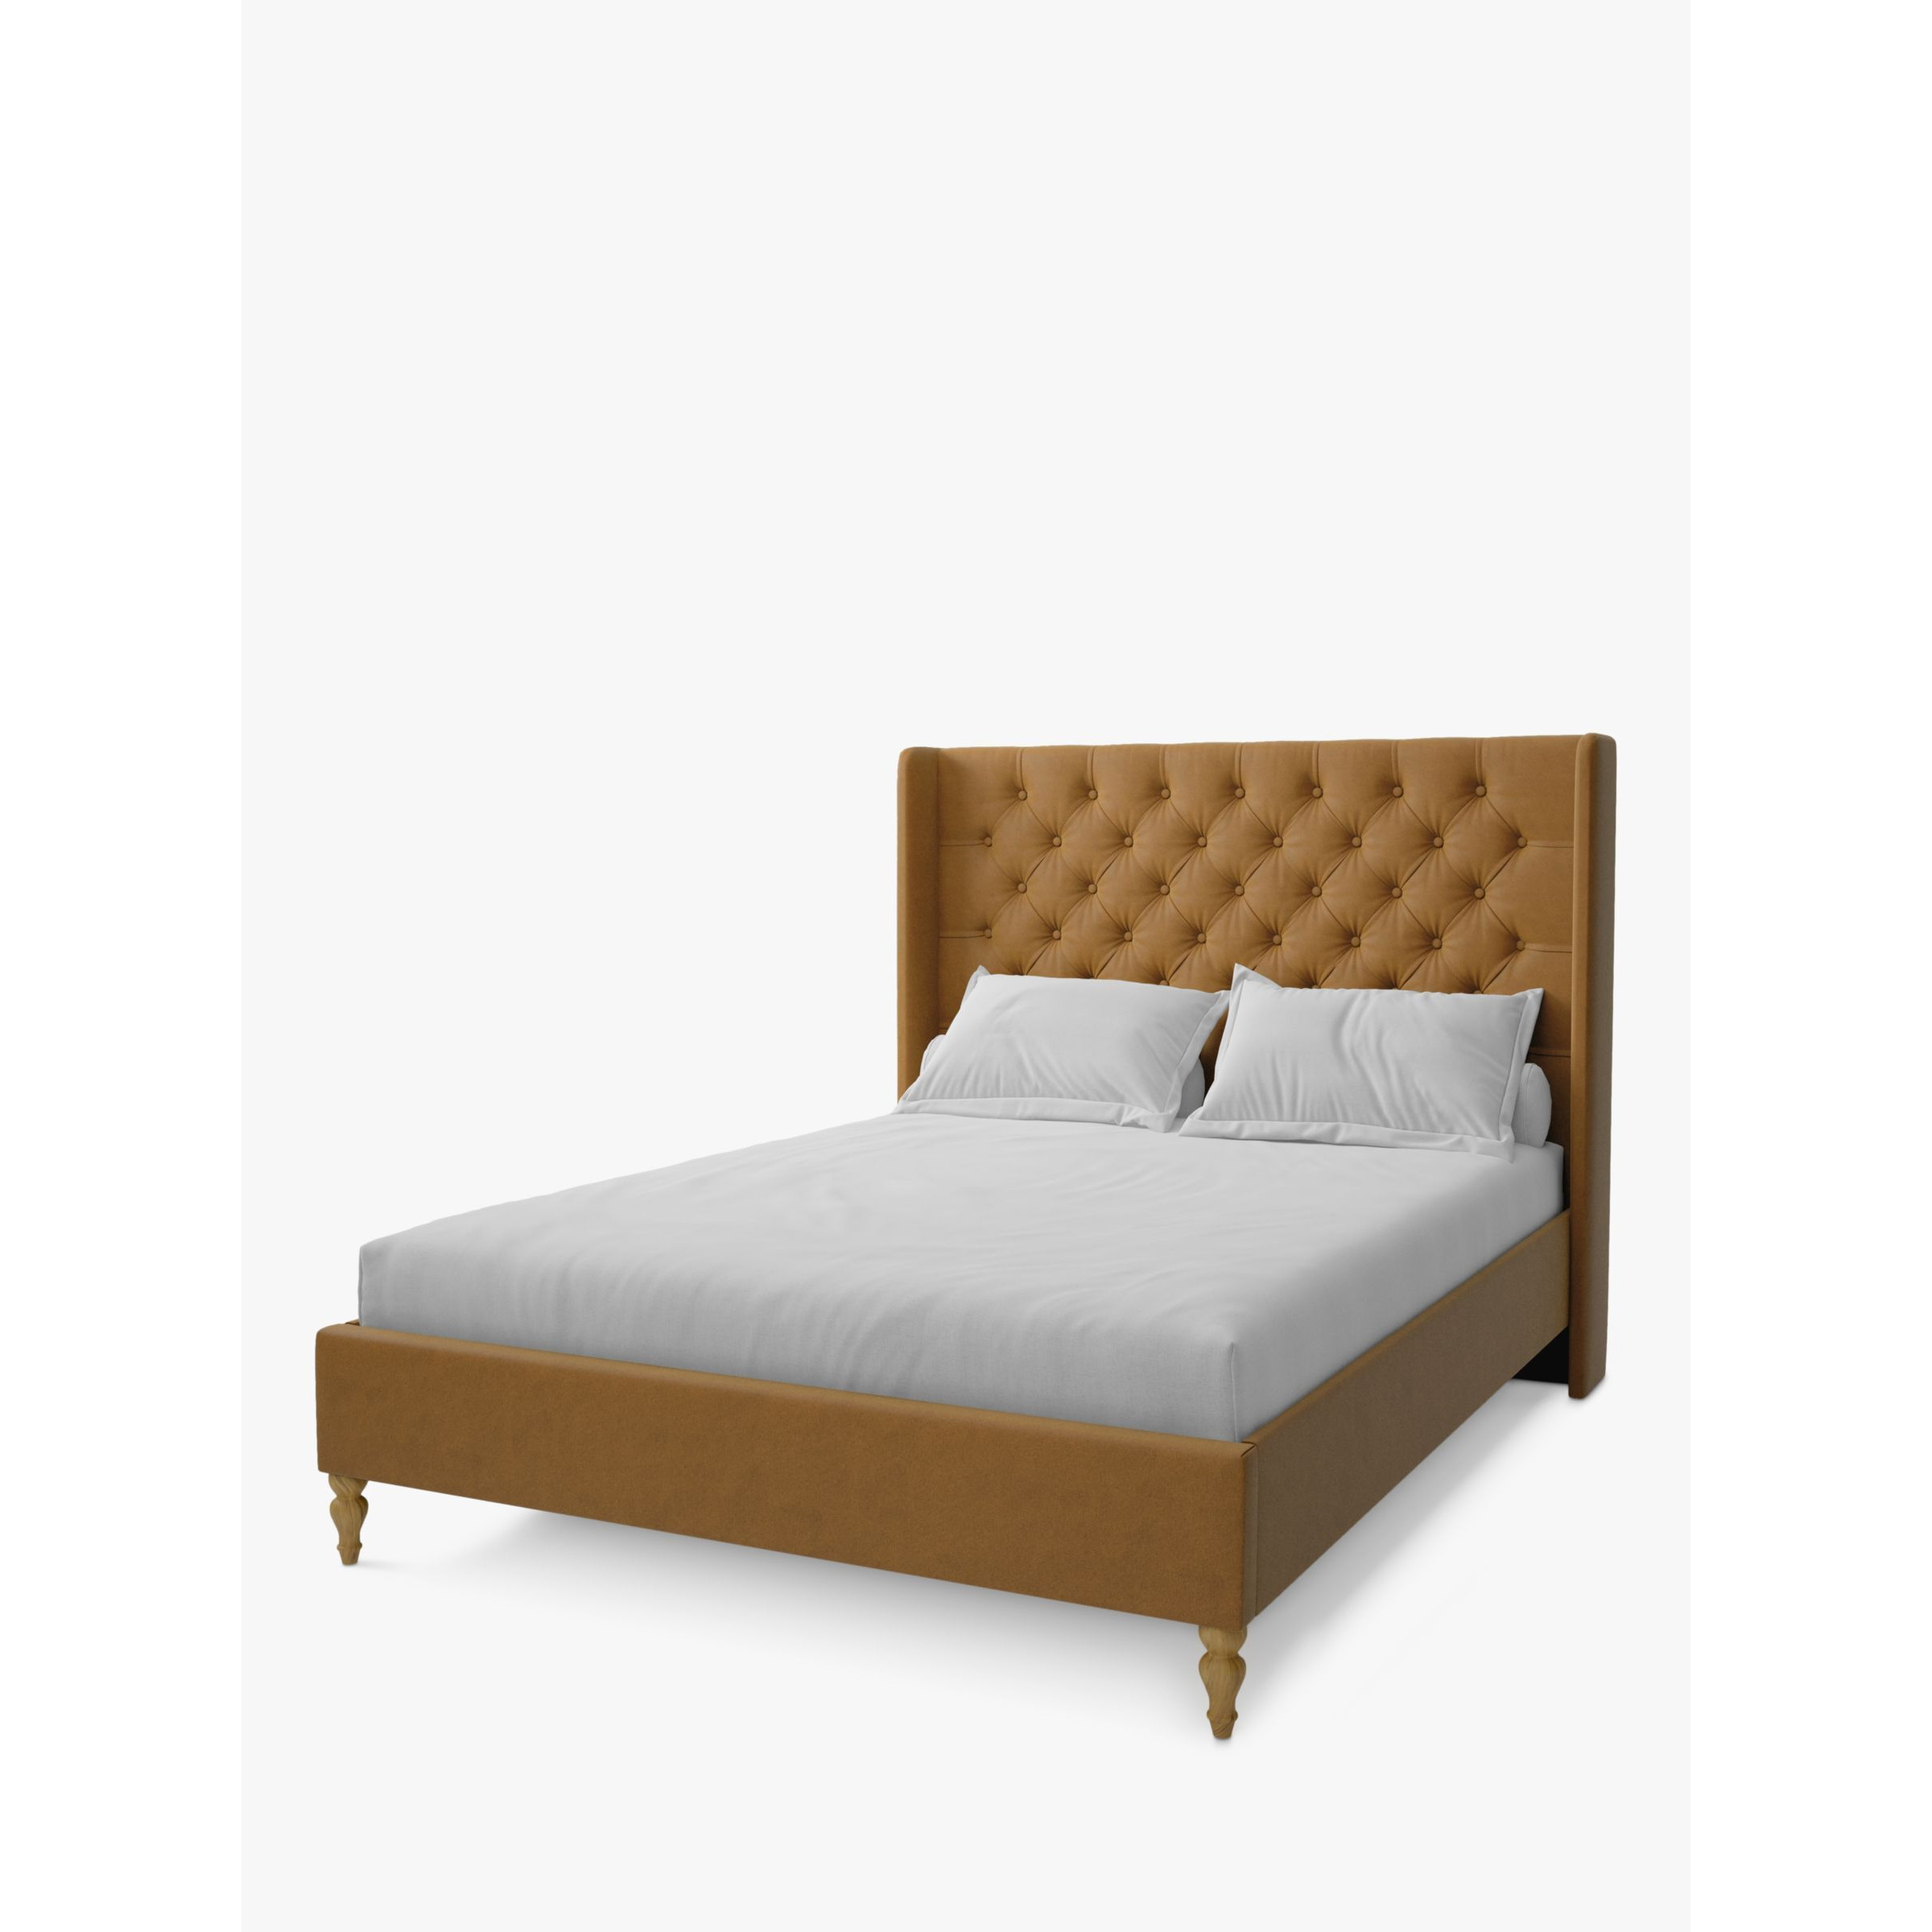 Koti Home Astley Upholstered Bed Frame, Super King Size - image 1